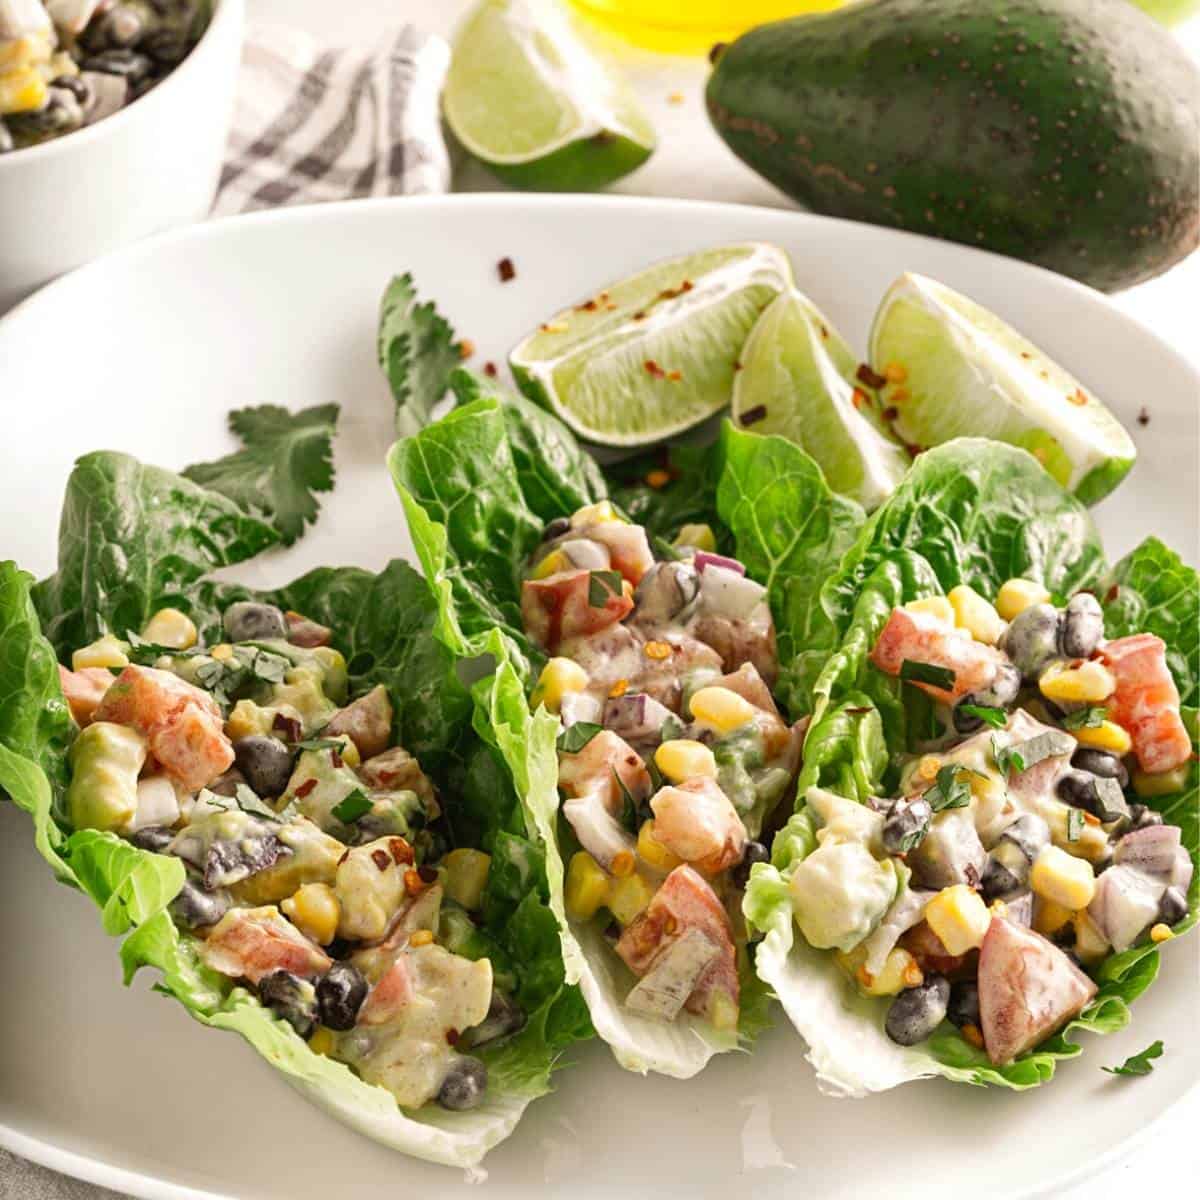 Vegan Mexican Lettuce Wraps